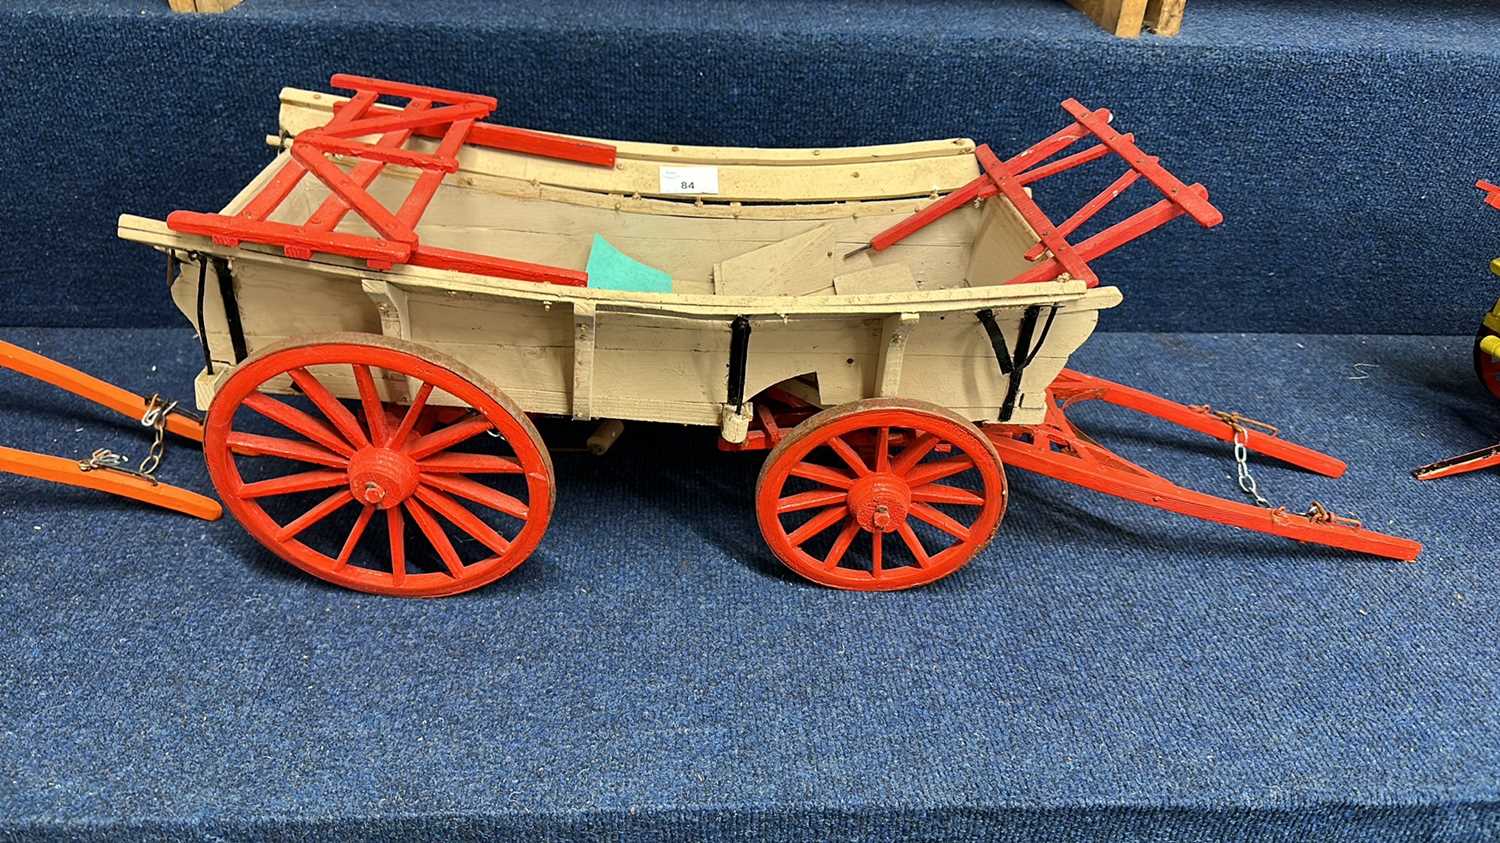 Lot 84 - A scratch built model of an Essex Wagon...